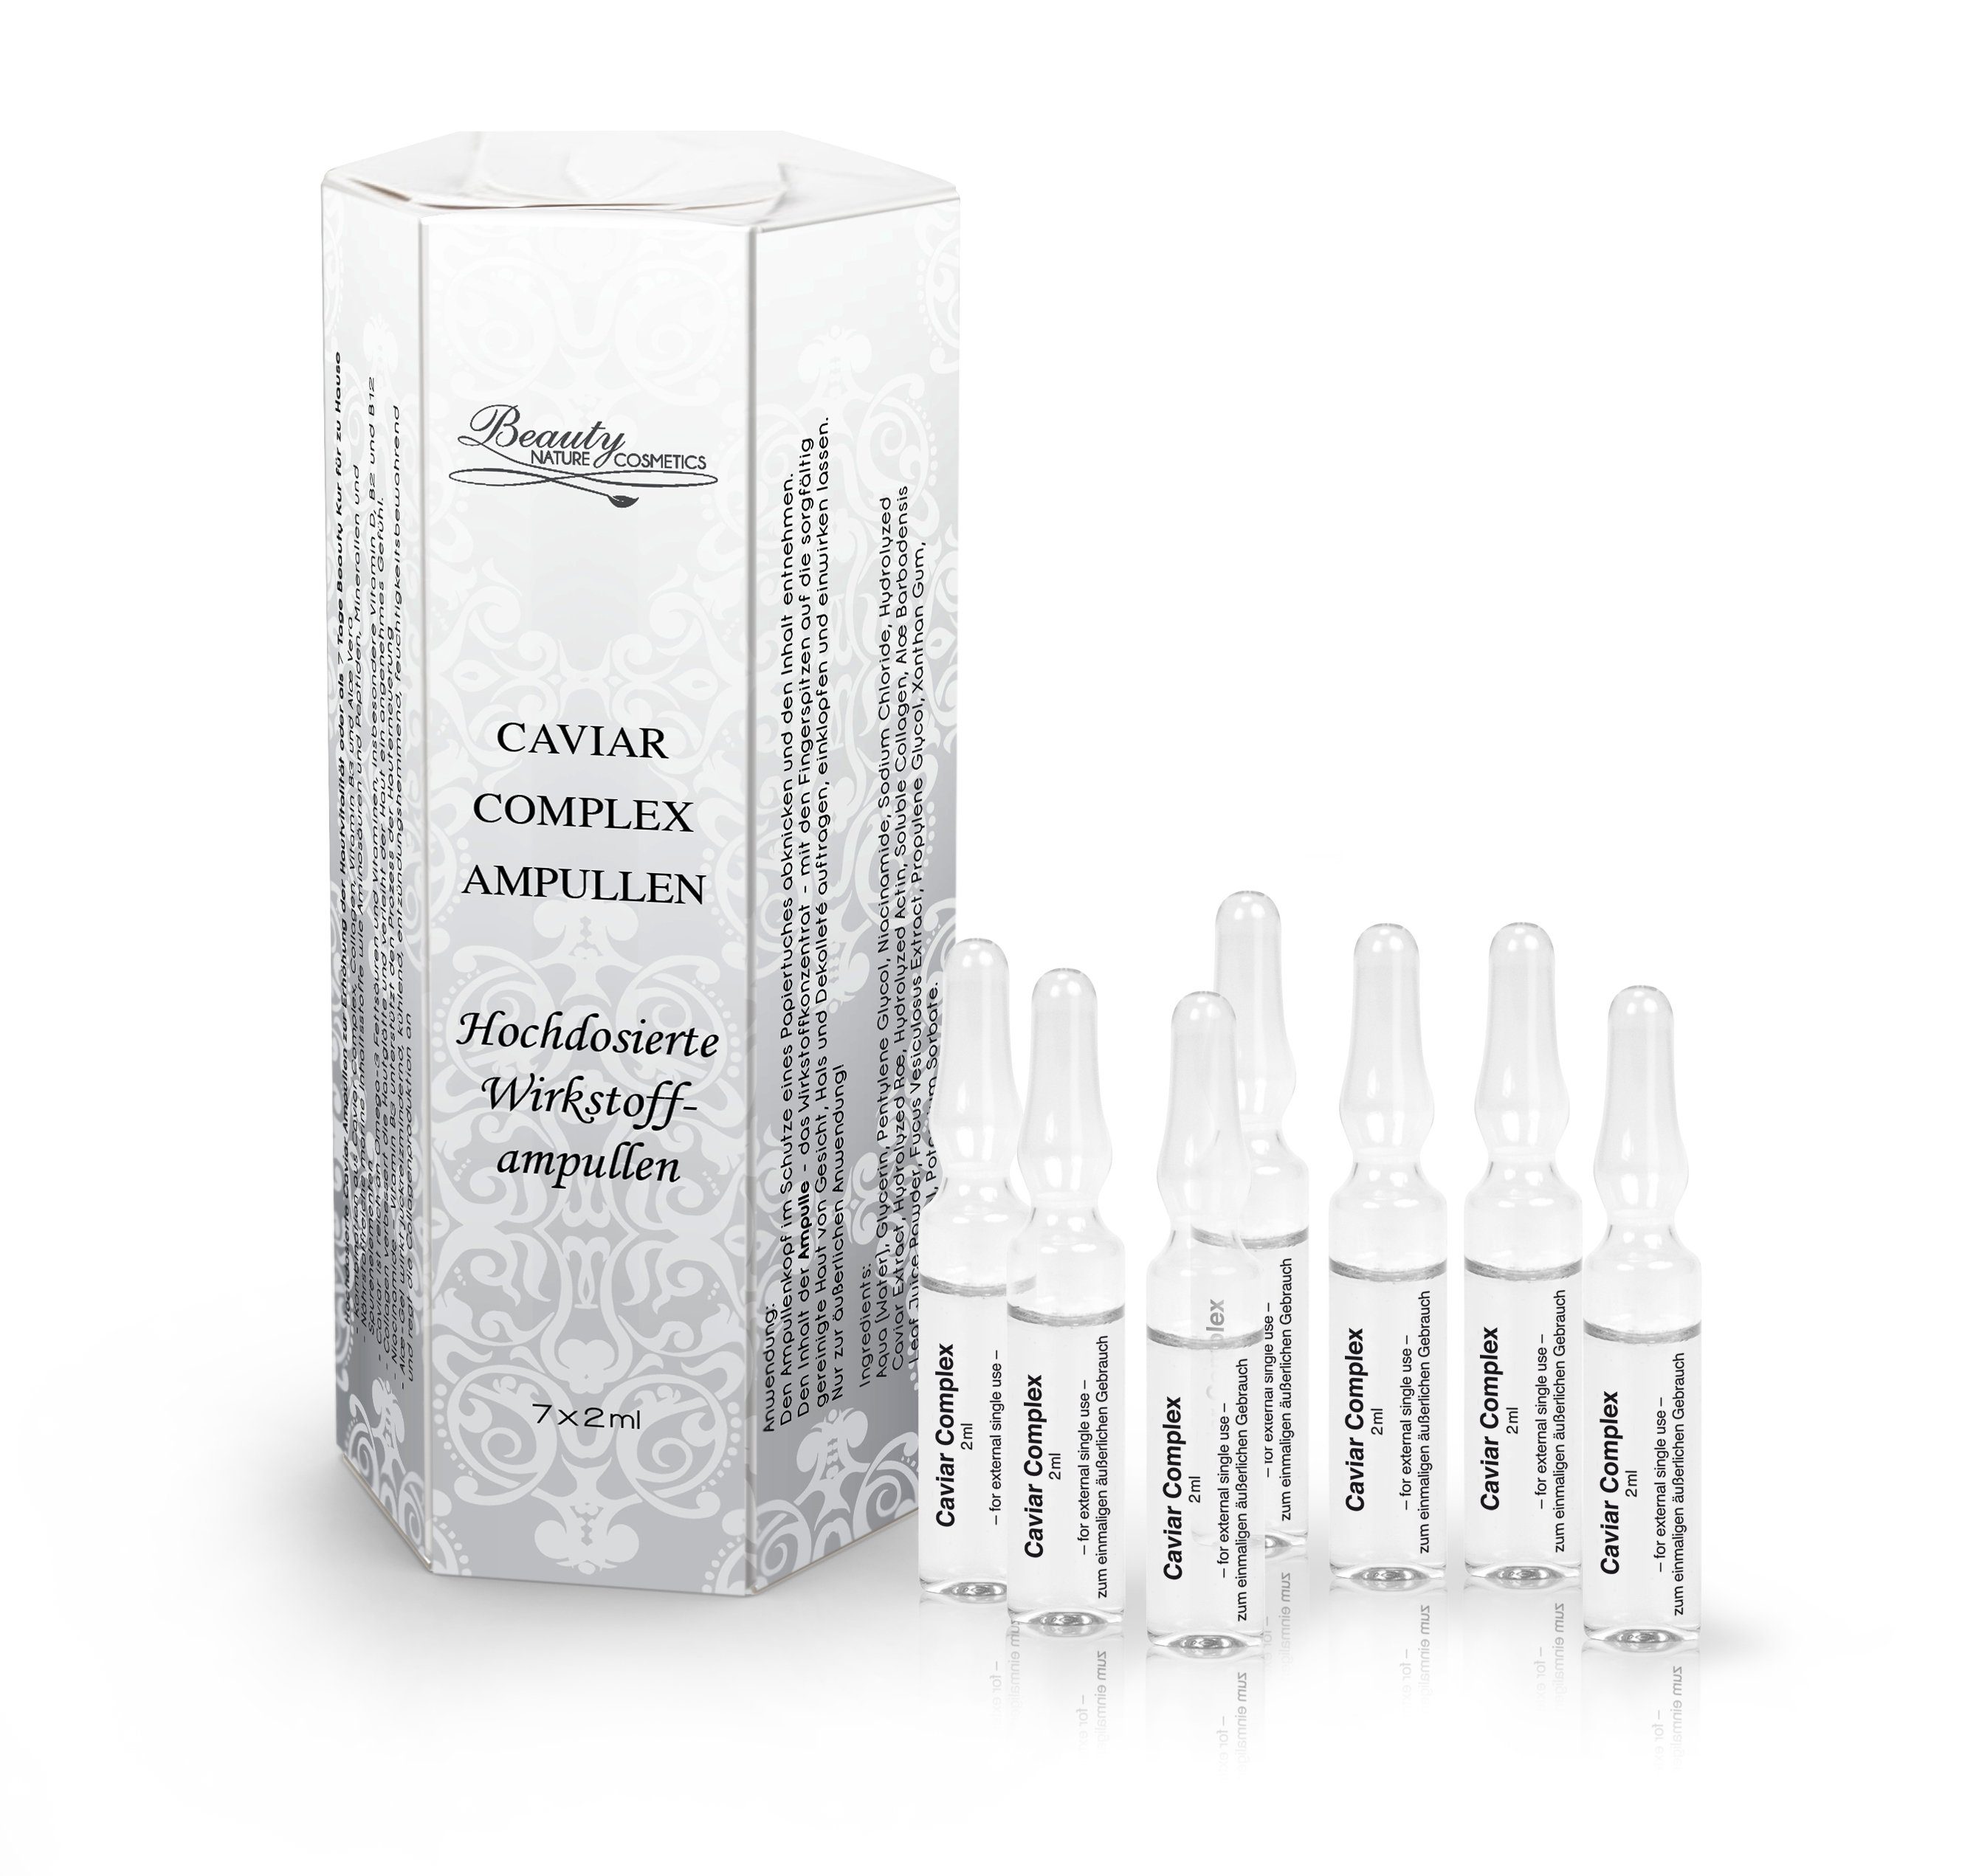 Beauty Nature Cosmetics Augenpflege-Set Caviar Complex Wirkstoffampullen, Anti-Aging, hochdosierte Anti Falten Wirkung, Aloe Vera kühlt angenehm